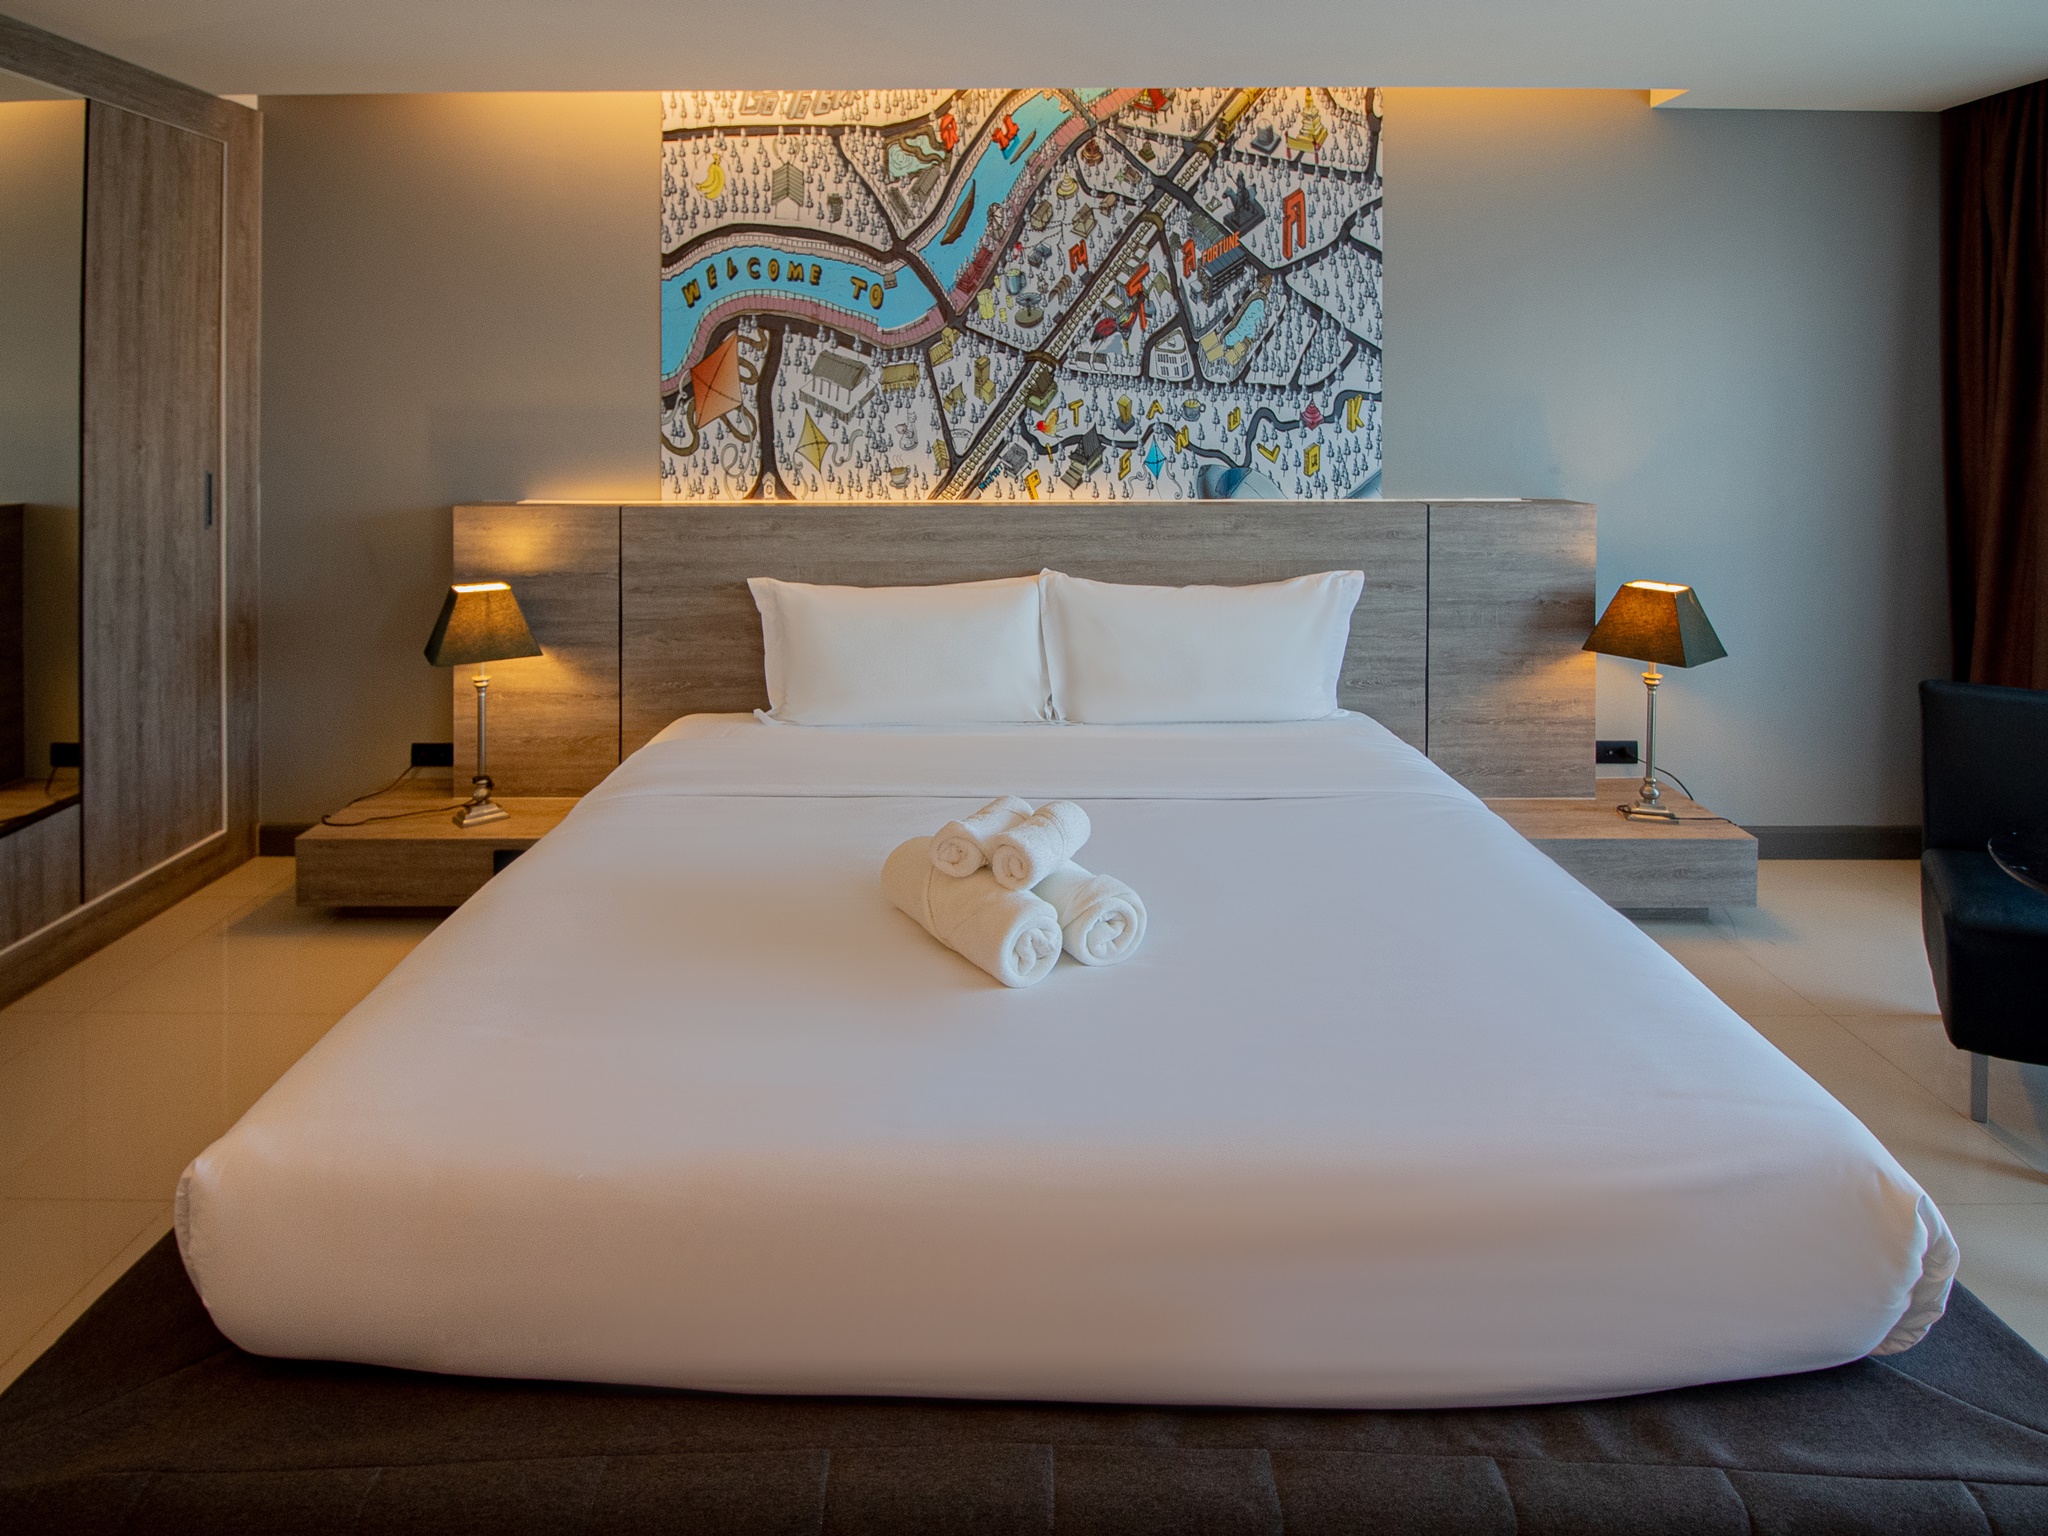 รีวิวโรงแรมฟอร์จูน ดี พิษณุโลก - โปรโมชั่นโรงแรม 3 ดาวในพิษณุโลก | Trip.com